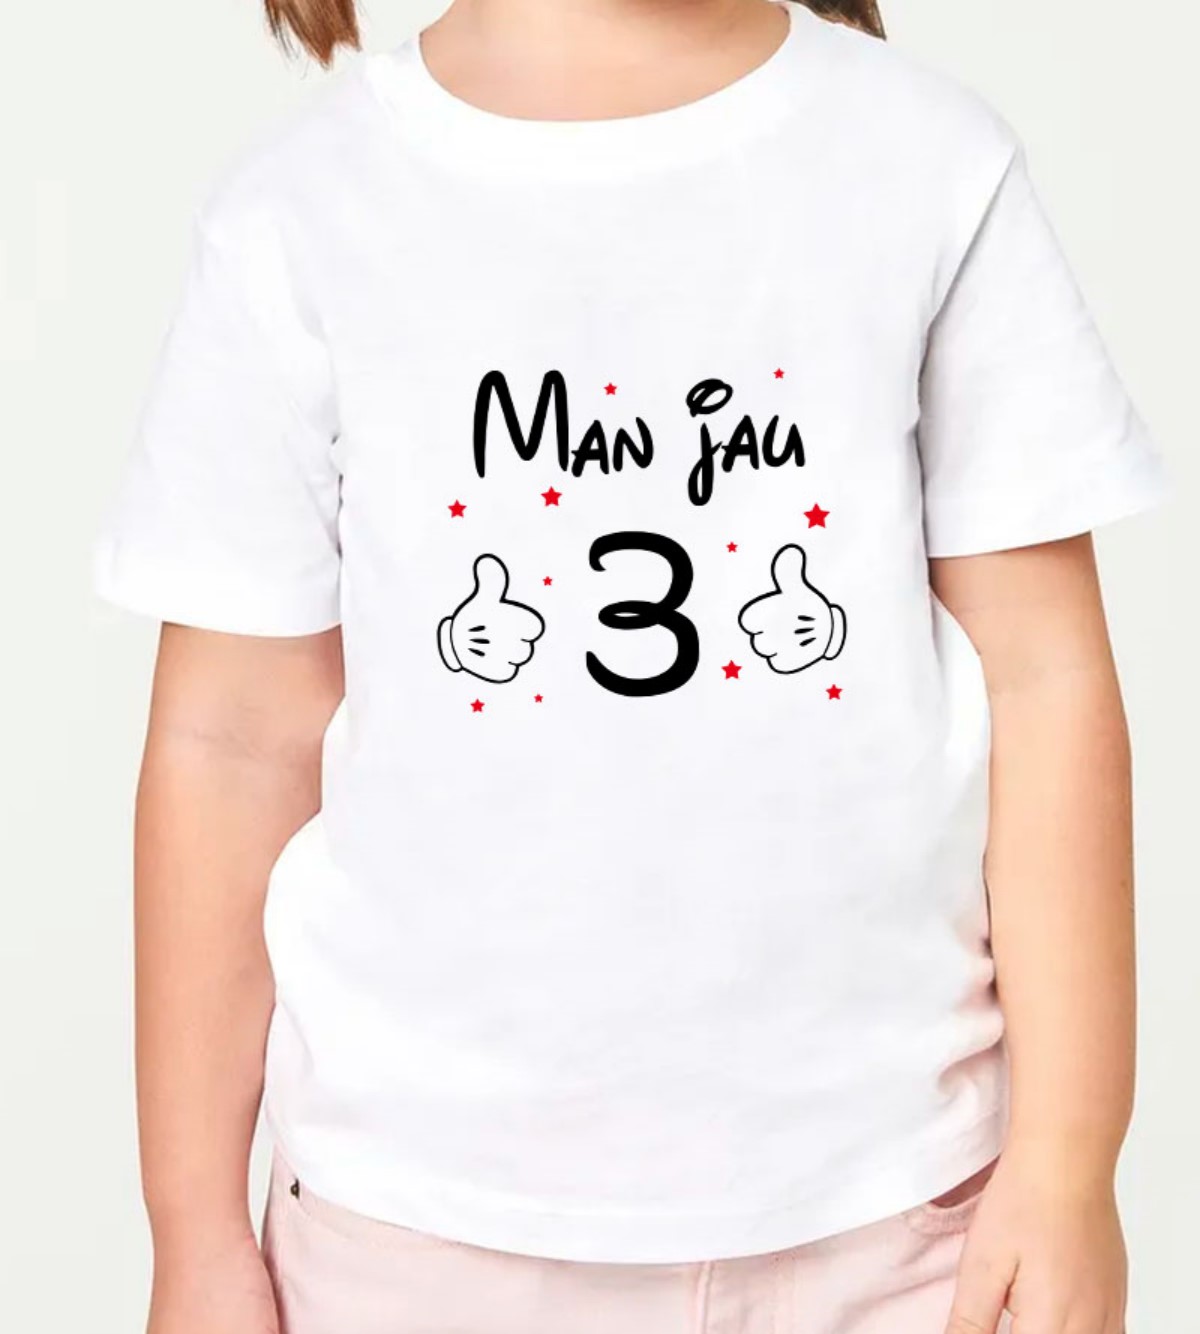 Mergaitės gimtadienio marškinėliai „Man jau“